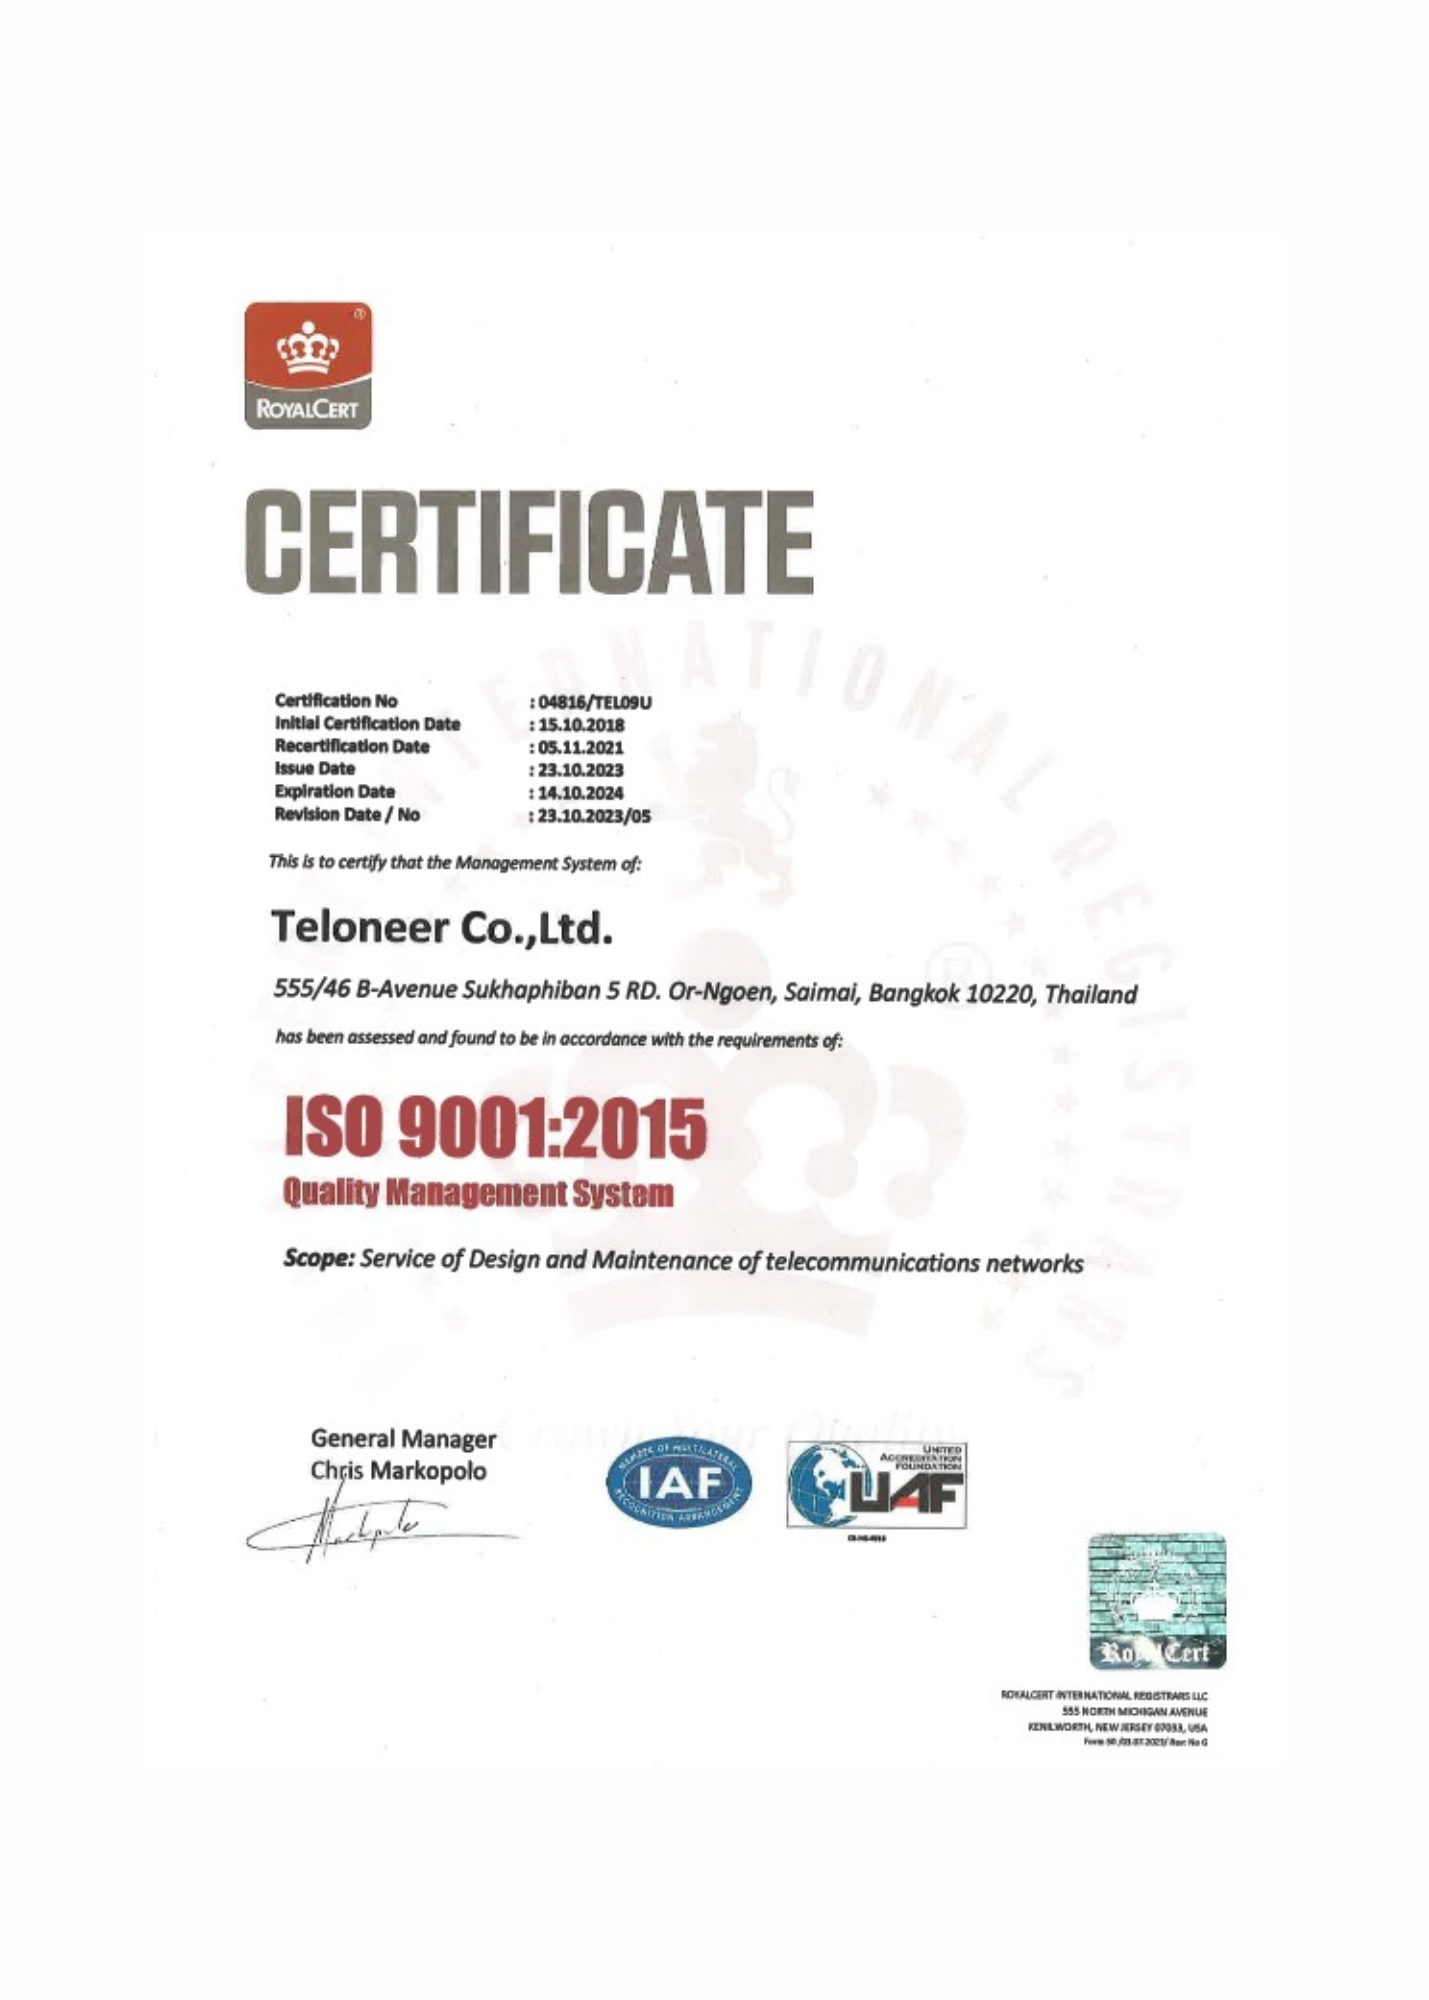 Certificate of ISO 9001-2015 (04816-TEL09U) Teloneer Company Limited